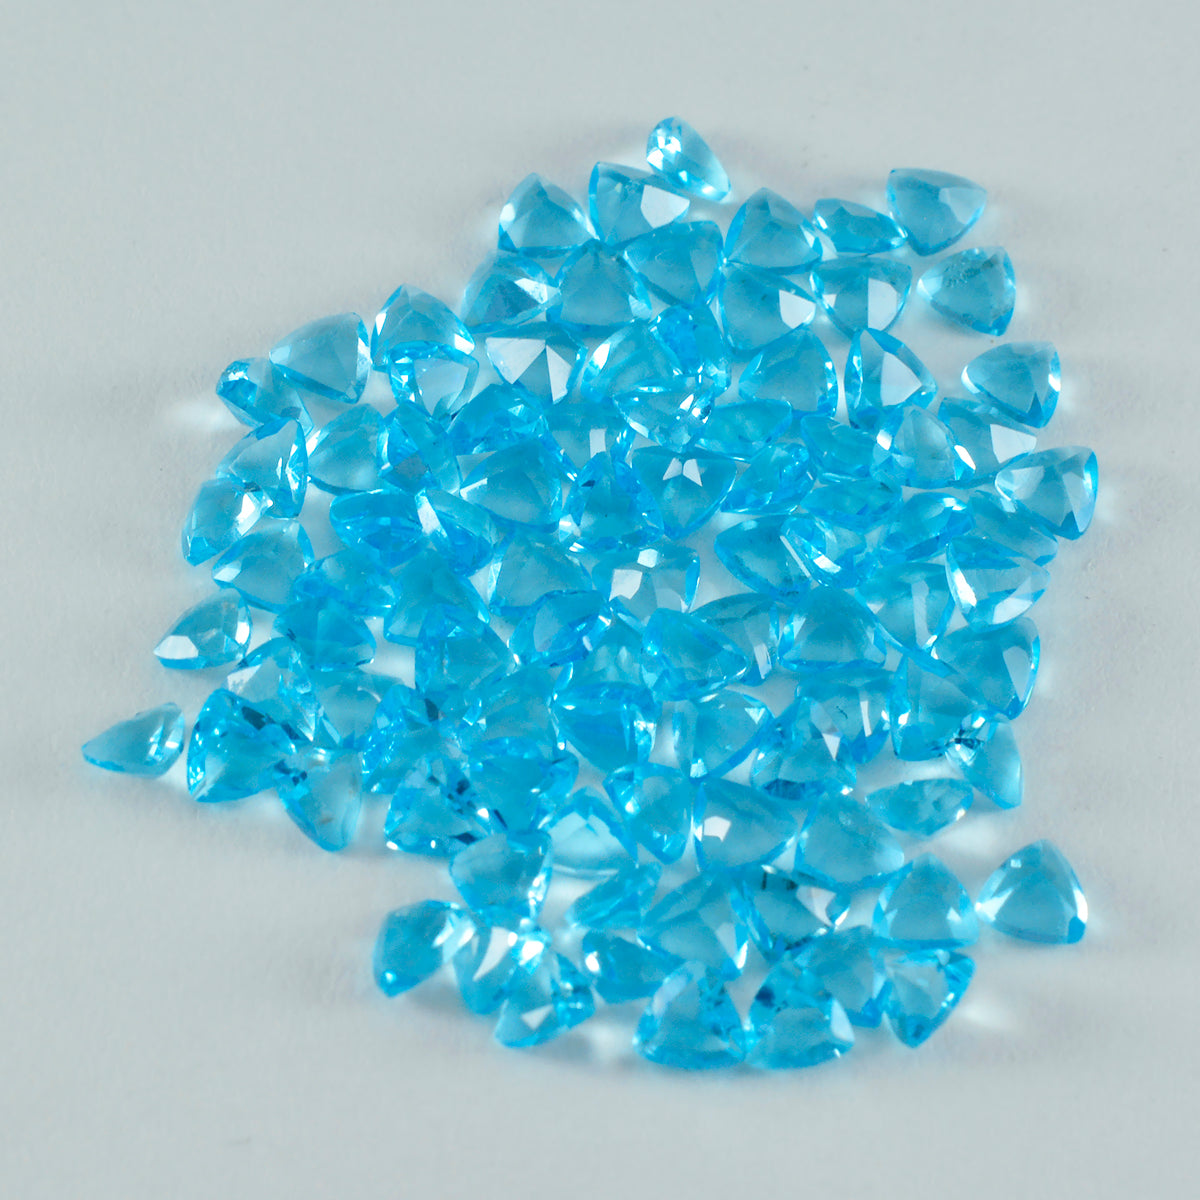 riyogems 1 шт., синий топаз, граненый драгоценный камень 4x4 мм, форма триллиона, отличное качество